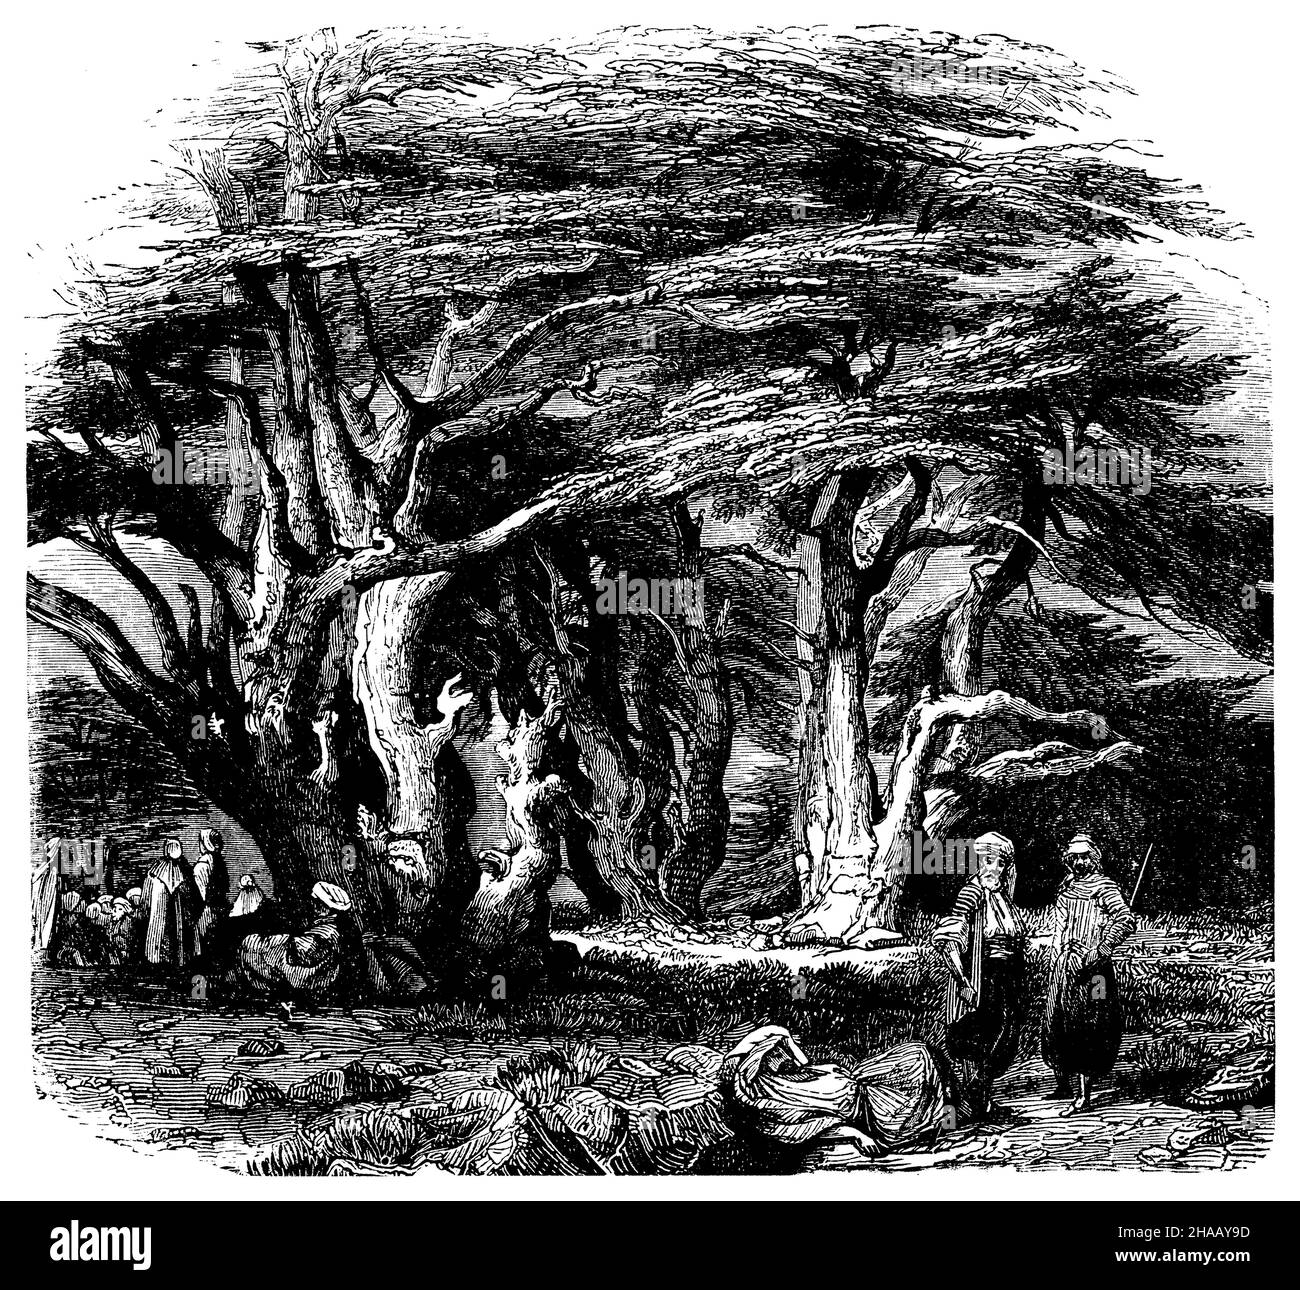 Cèdre du Liban, Cedrus libani Syn.Cedrus libanotica, (livre d'histoire de la religion, 1885), Zeder, Libanon- Banque D'Images